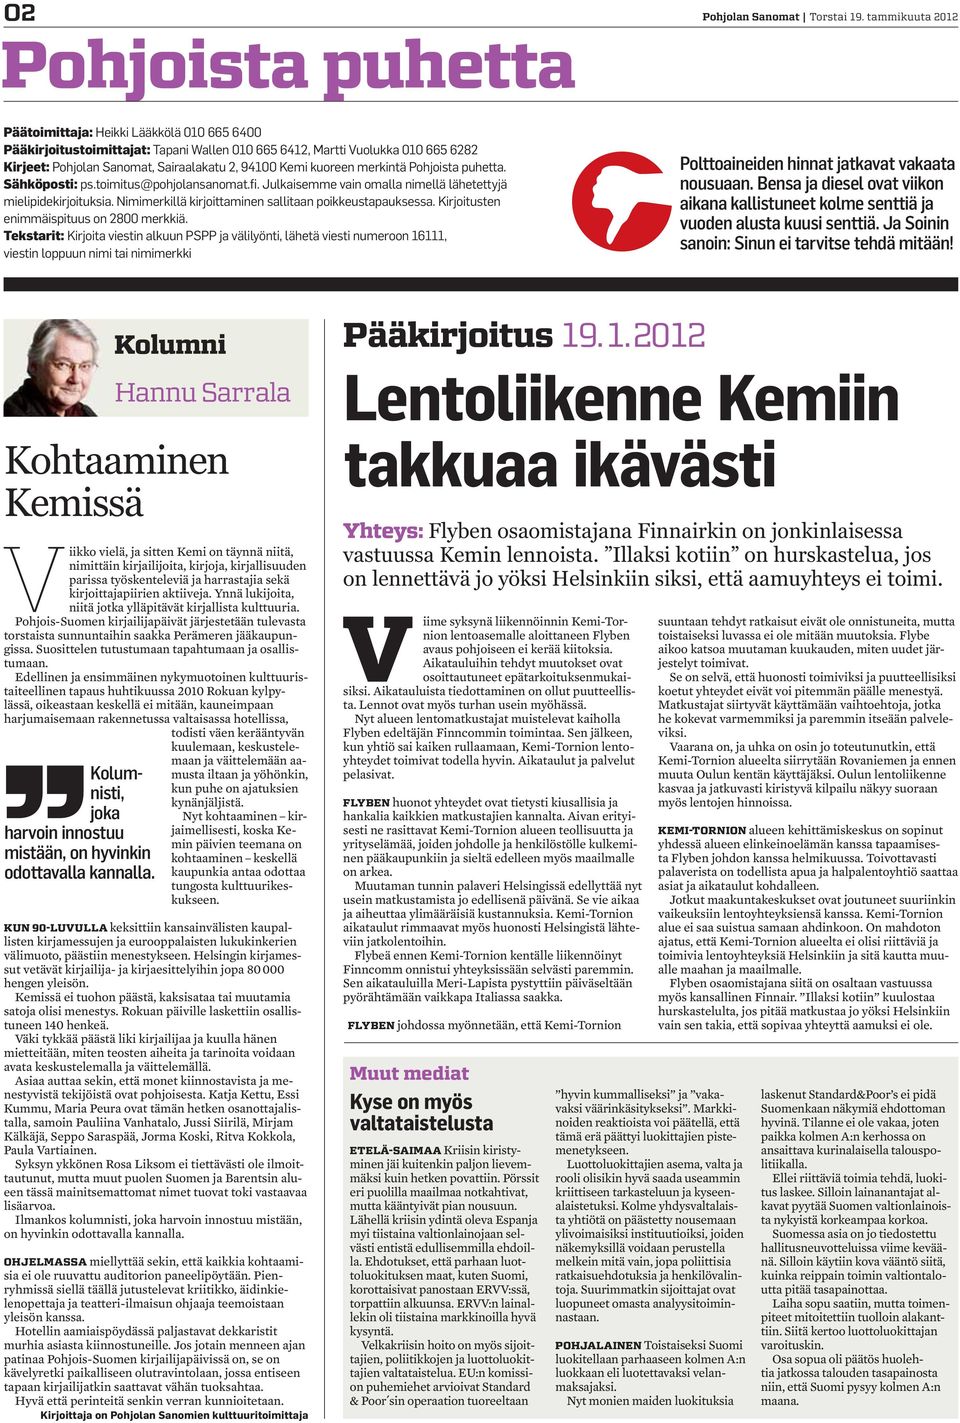 kuoreen merkintä Pohjoista puhetta. Sähköposti: ps.toimitus@pohjolansanomat.fi. Julkaisemme vain omalla nimellä lähetettyjä mielipidekirjoituksia.